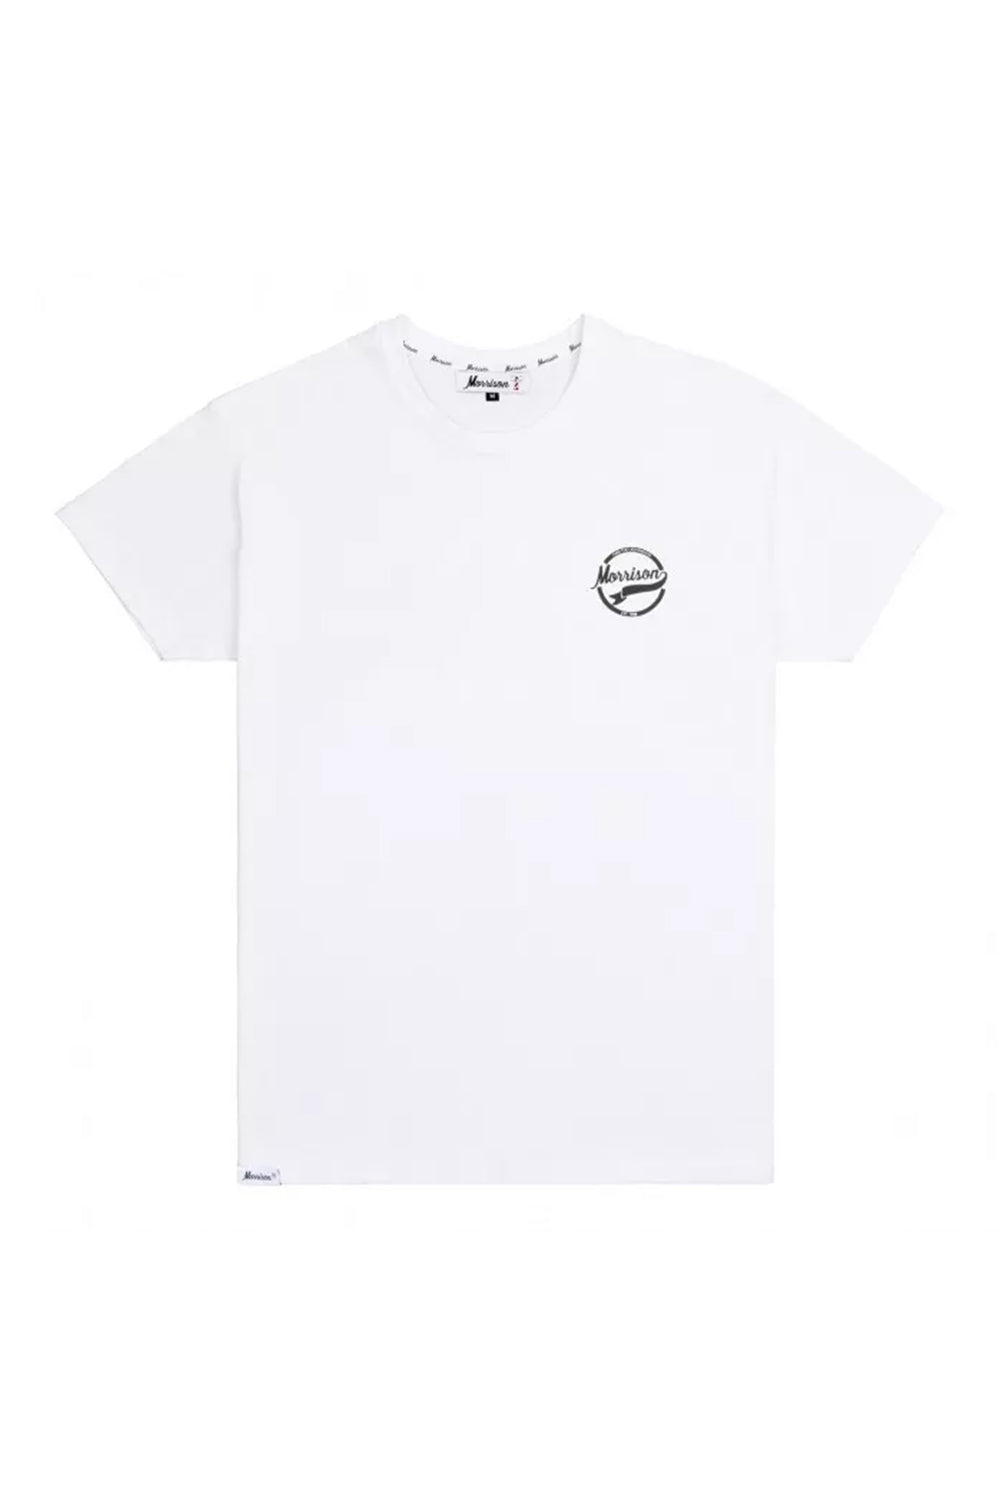 Off-White y sus camisetas de béisbol agujereadas de más de 1.000 euros